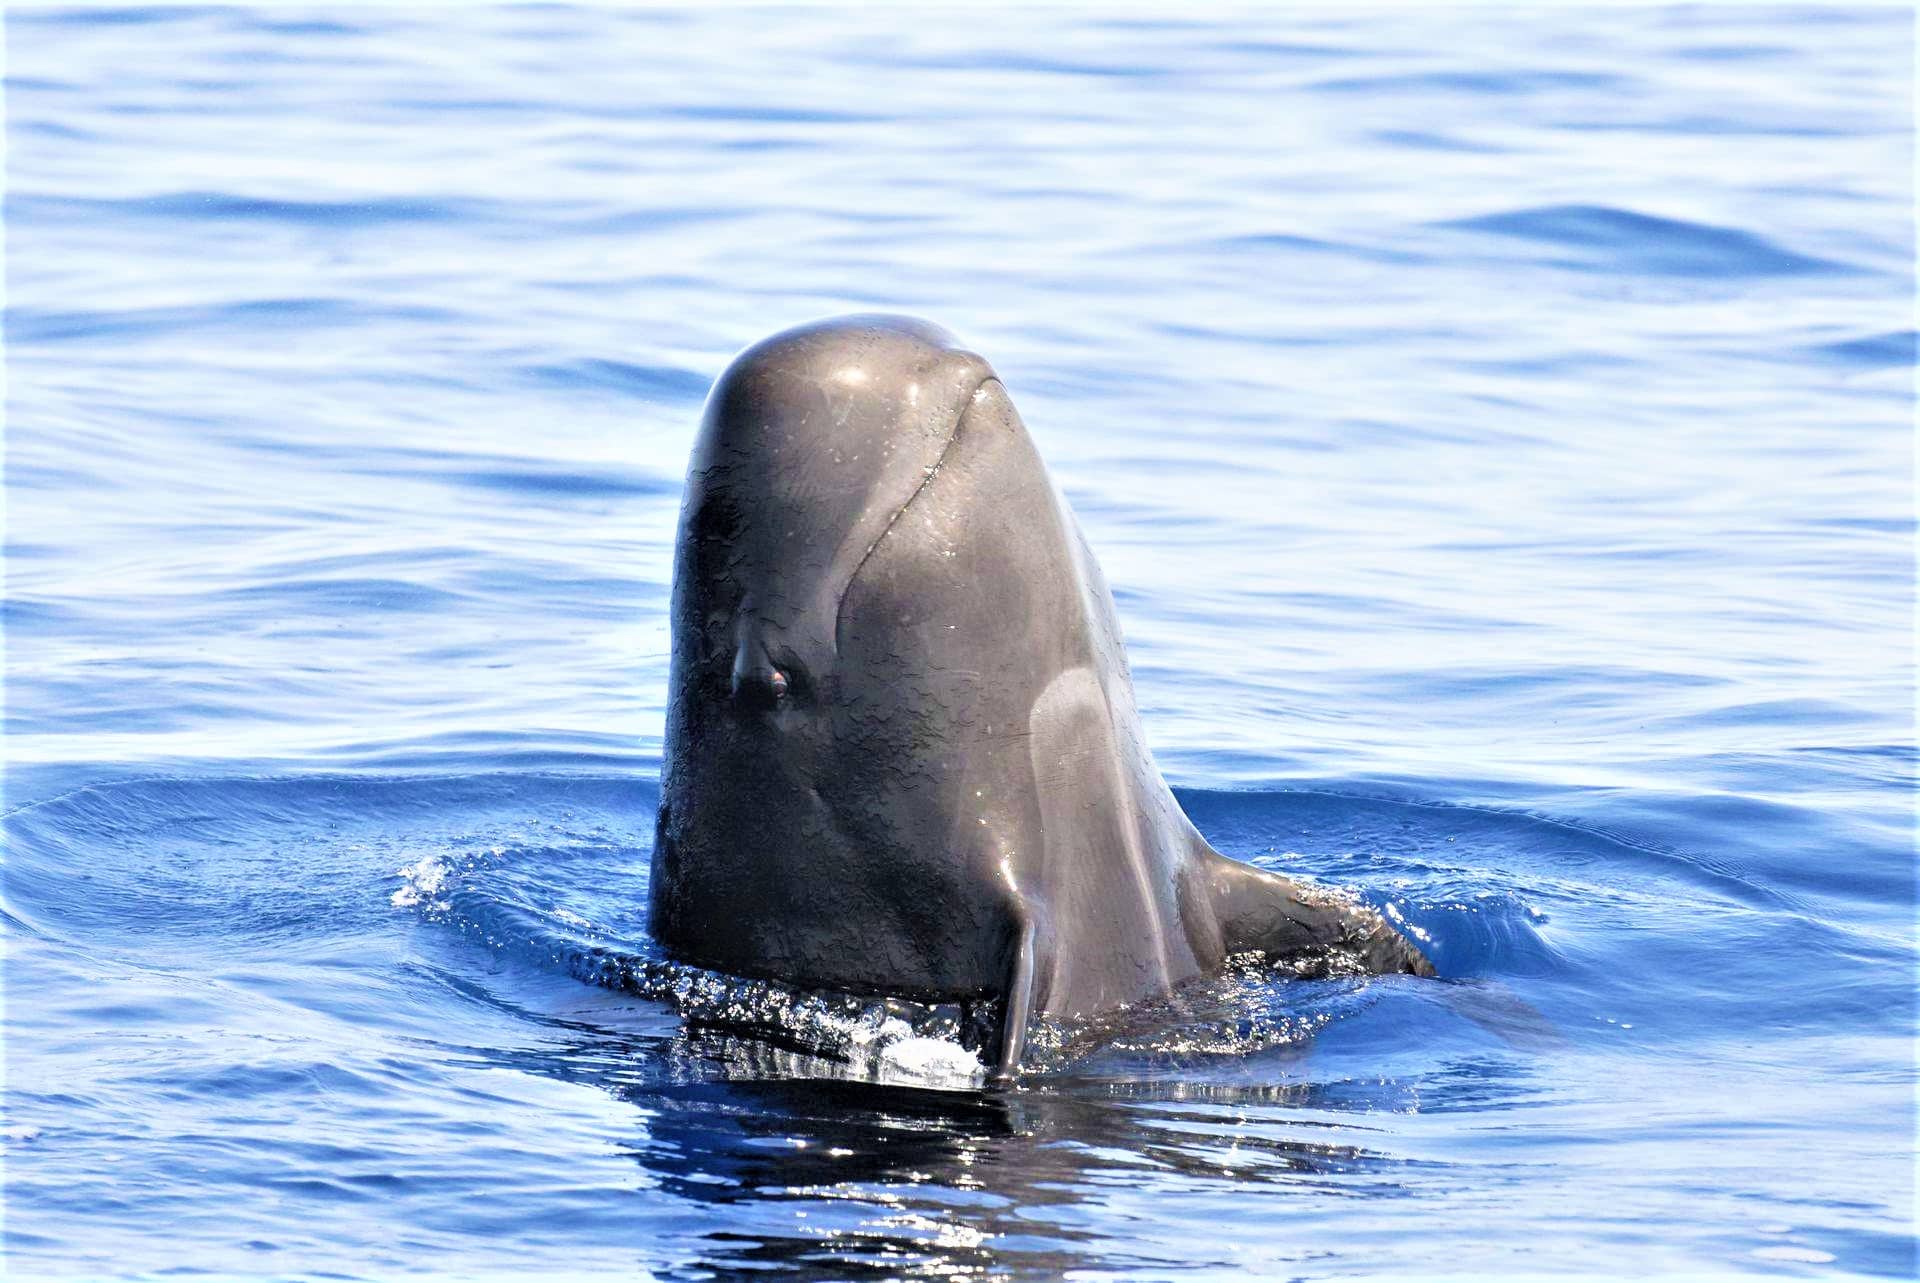 Alquilar un barco en Costa Adeje para observar ballenas y delfines